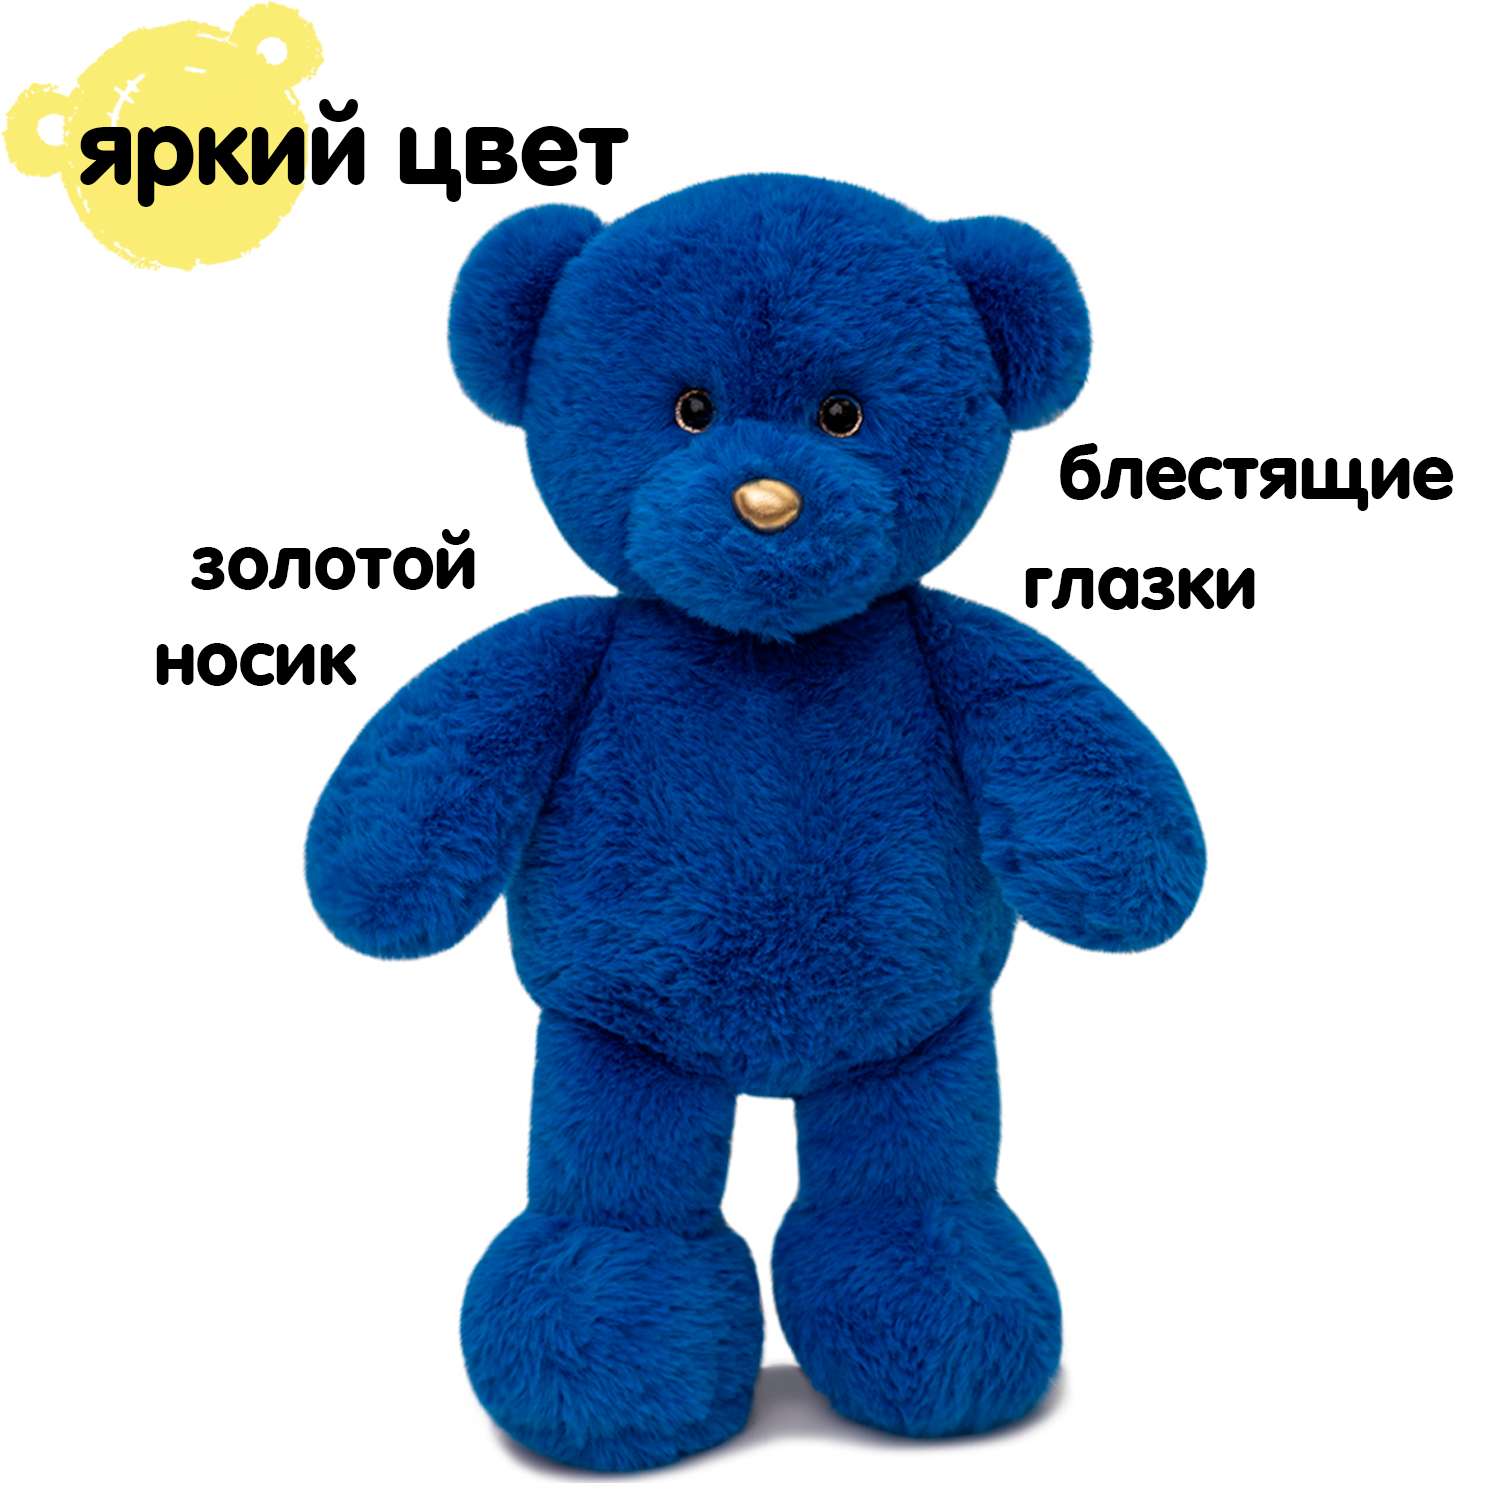 Мягкая игрушка KULT of toys Плюшевый мишка 35 см цвет синий - фото 6